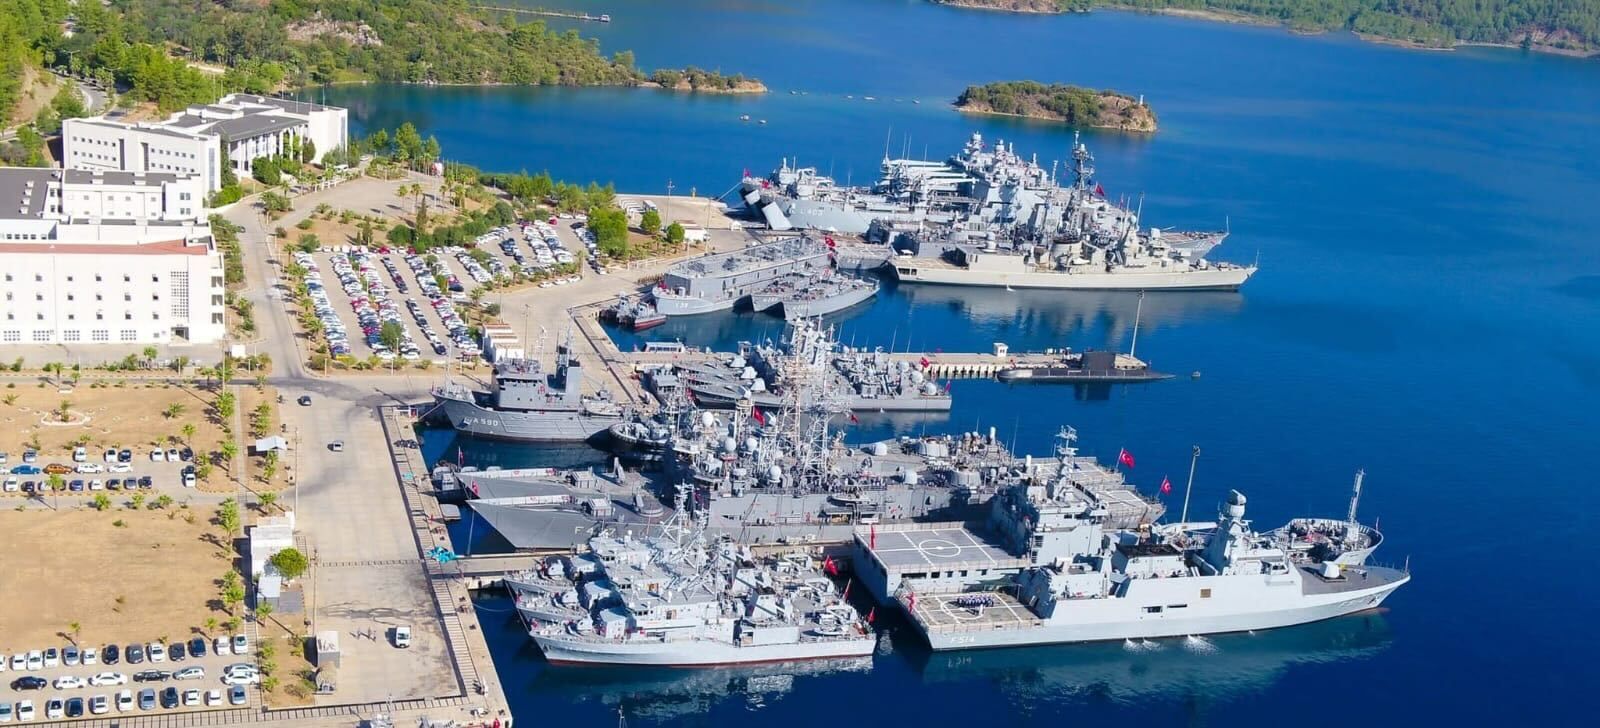 Unidades del ejercicio Dynamic Mariner/Mavi Balina '22 en la base naval de Aksaz, Turquía. OTAN